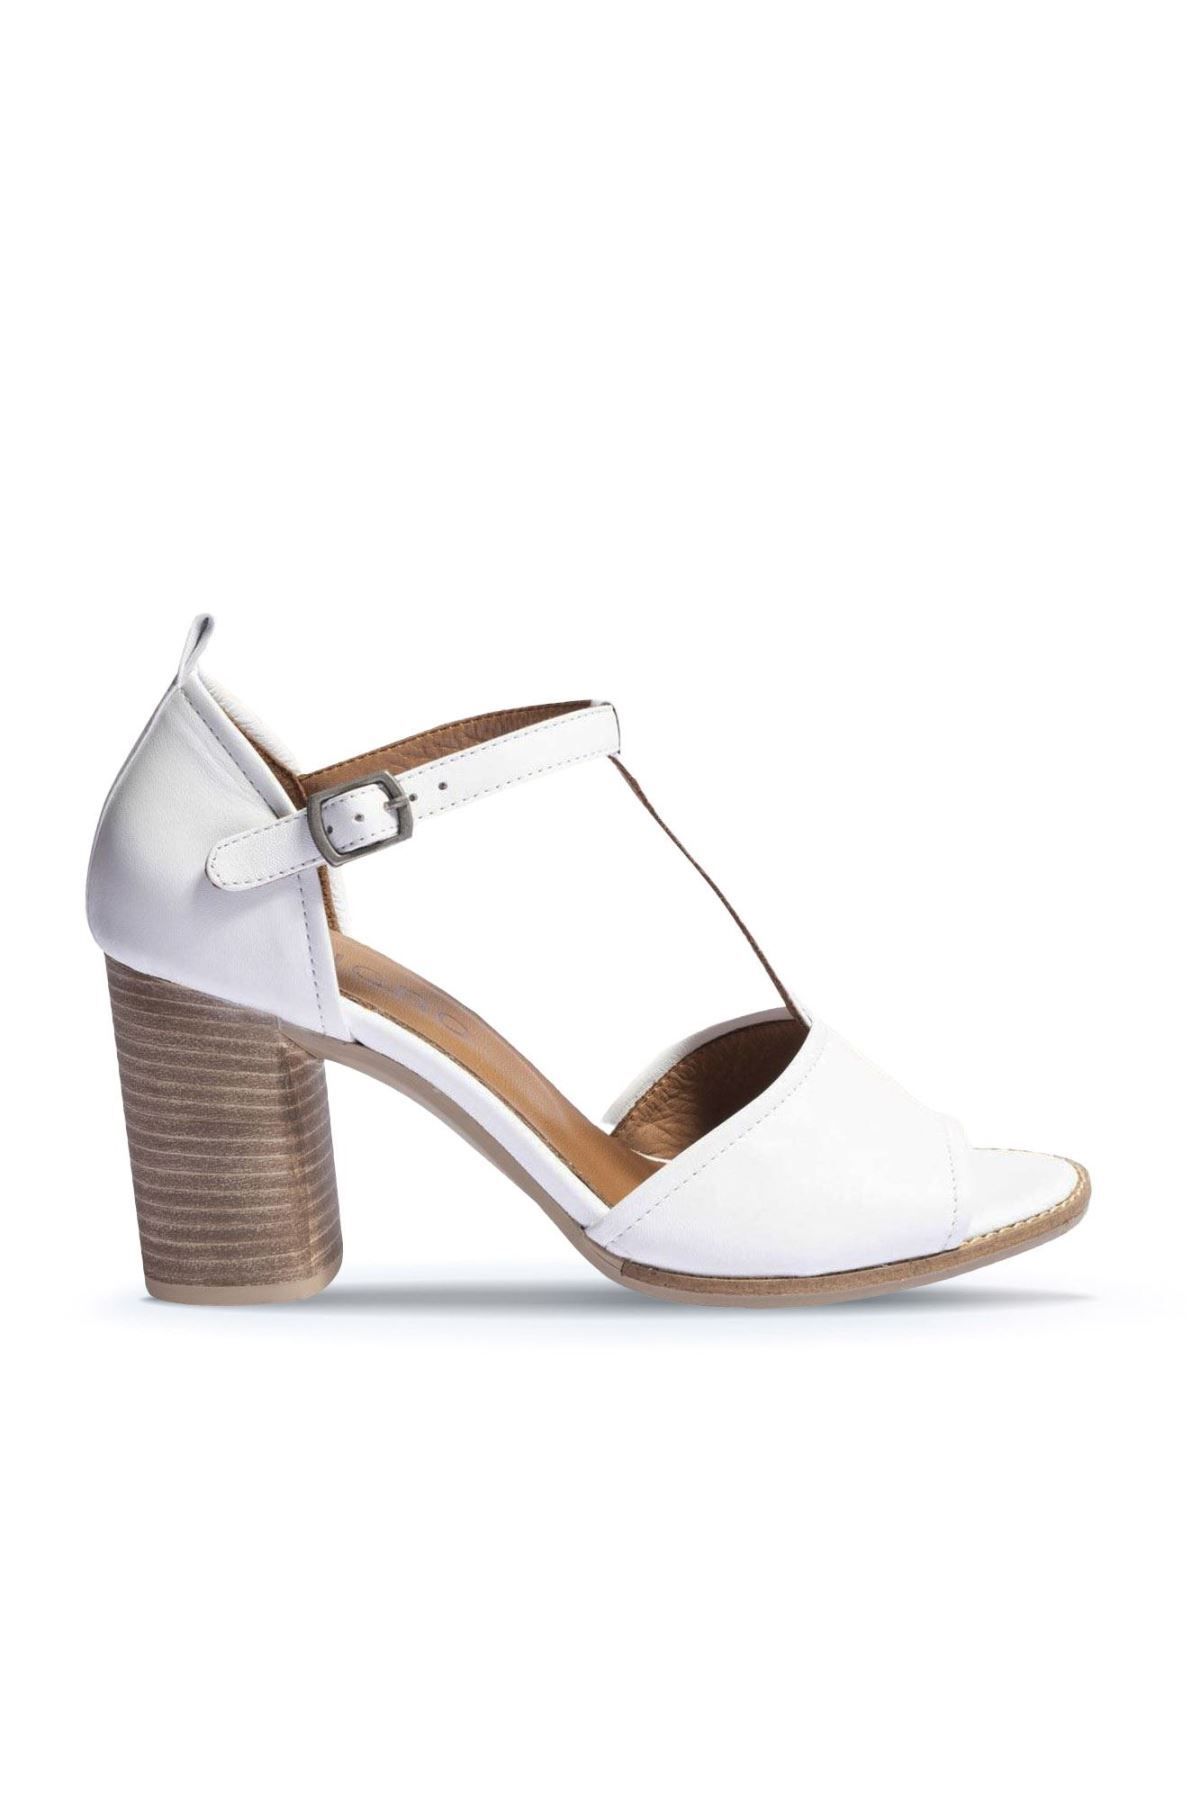 BUENO Shoes Beyaz Deri Kadın Topuklu Ayakkabı